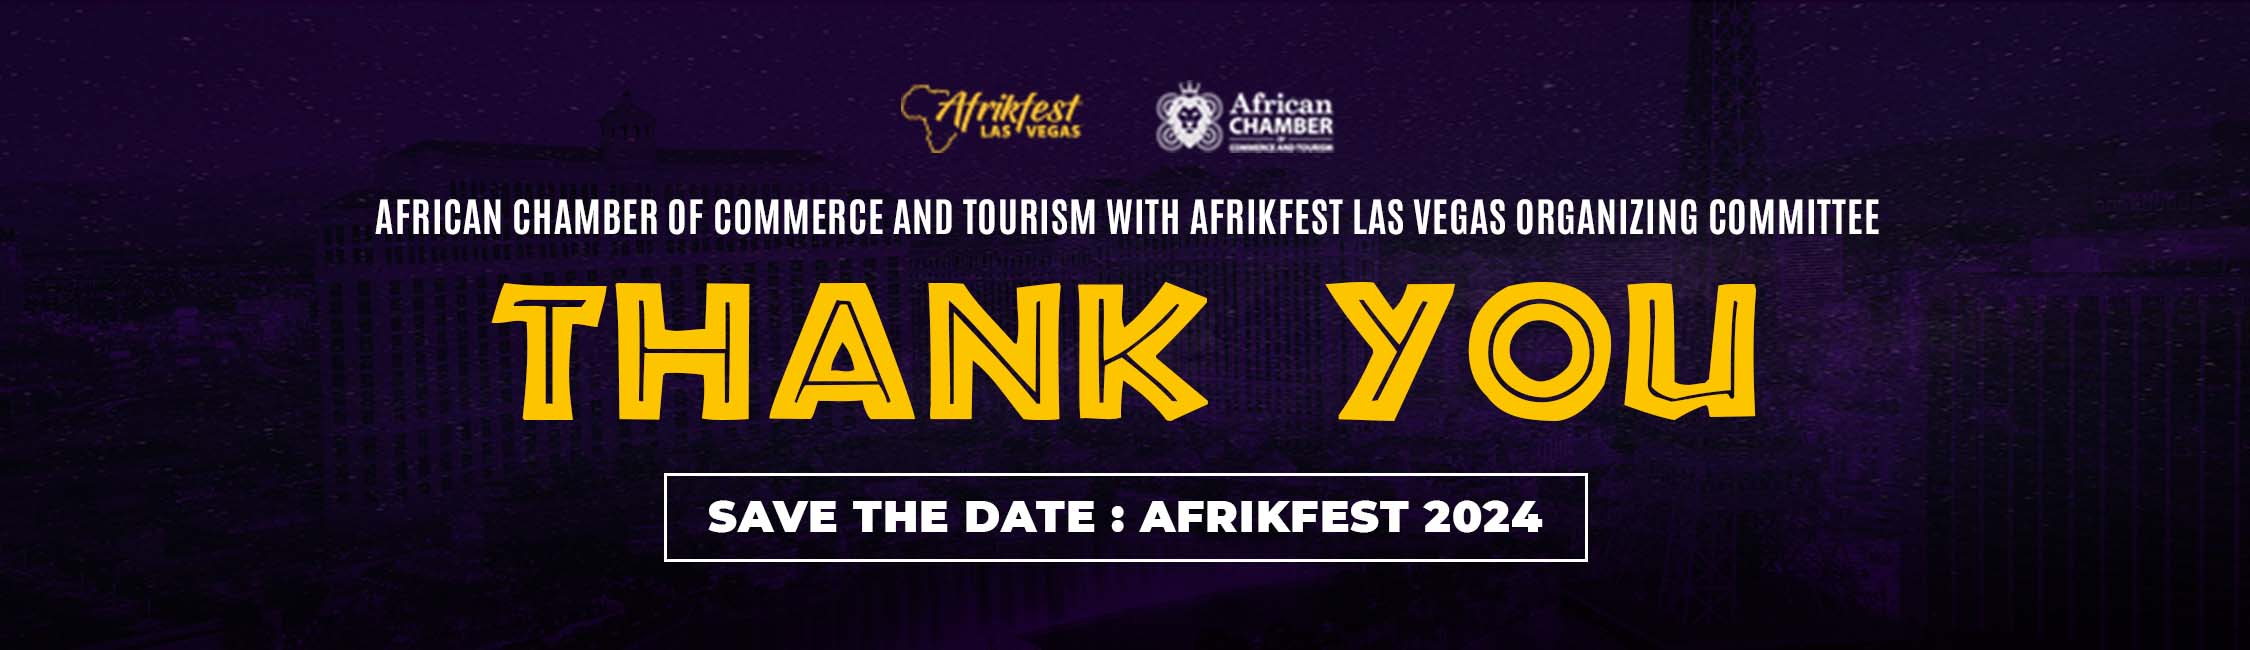 Afrikfest Las Vegas